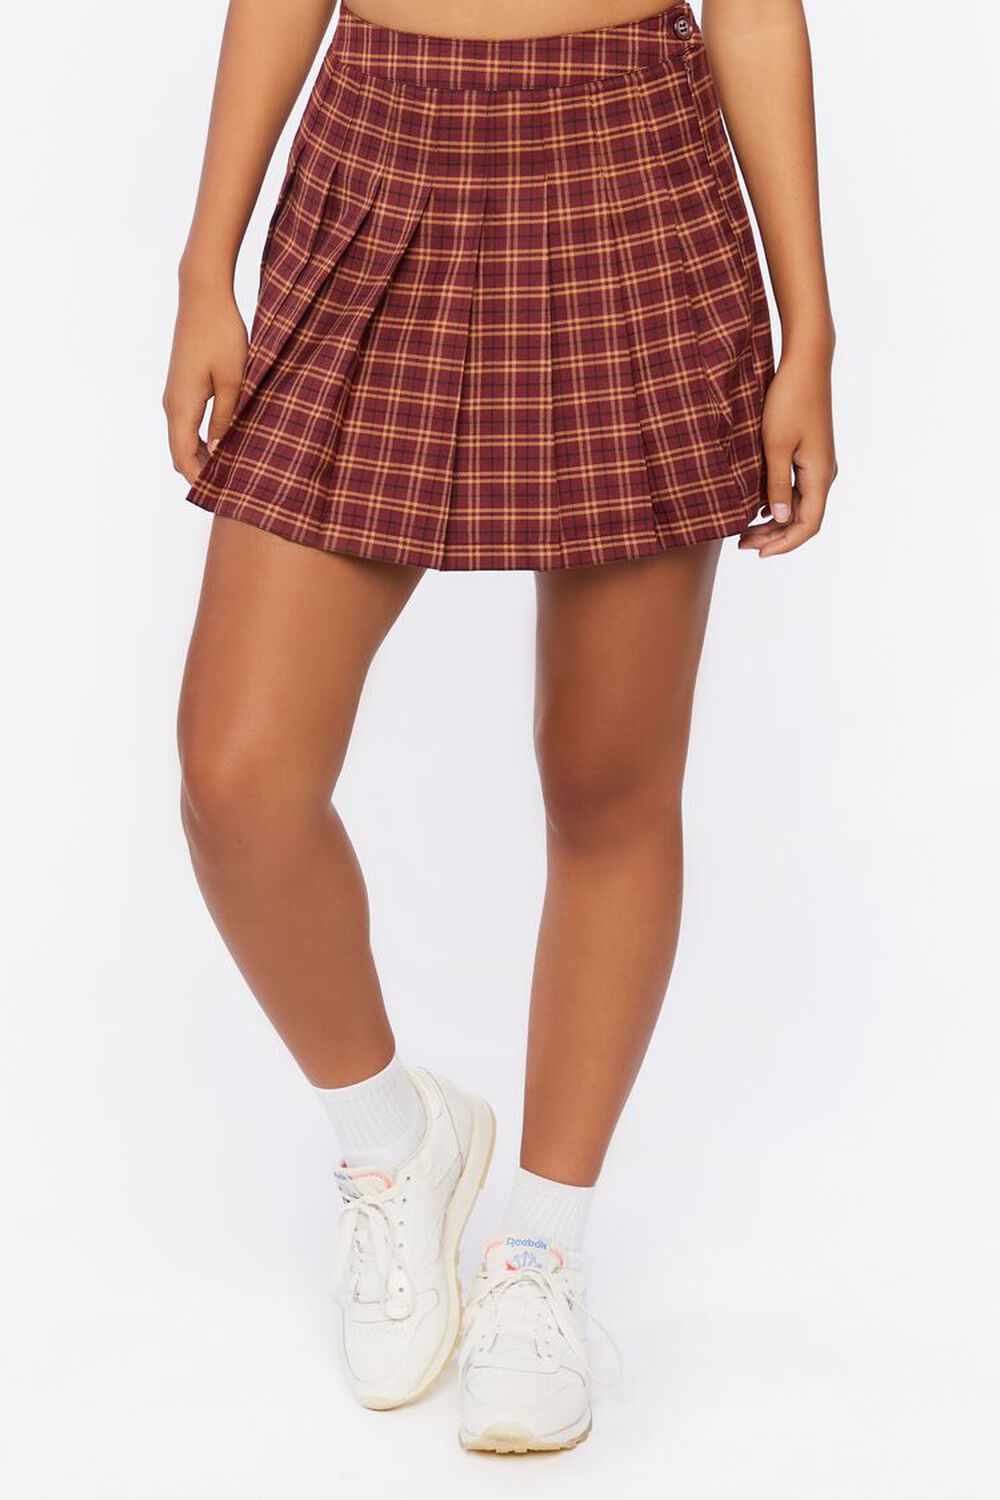 BURGUNDY/MULTI Pleated Plaid Mini Skirt, image 2